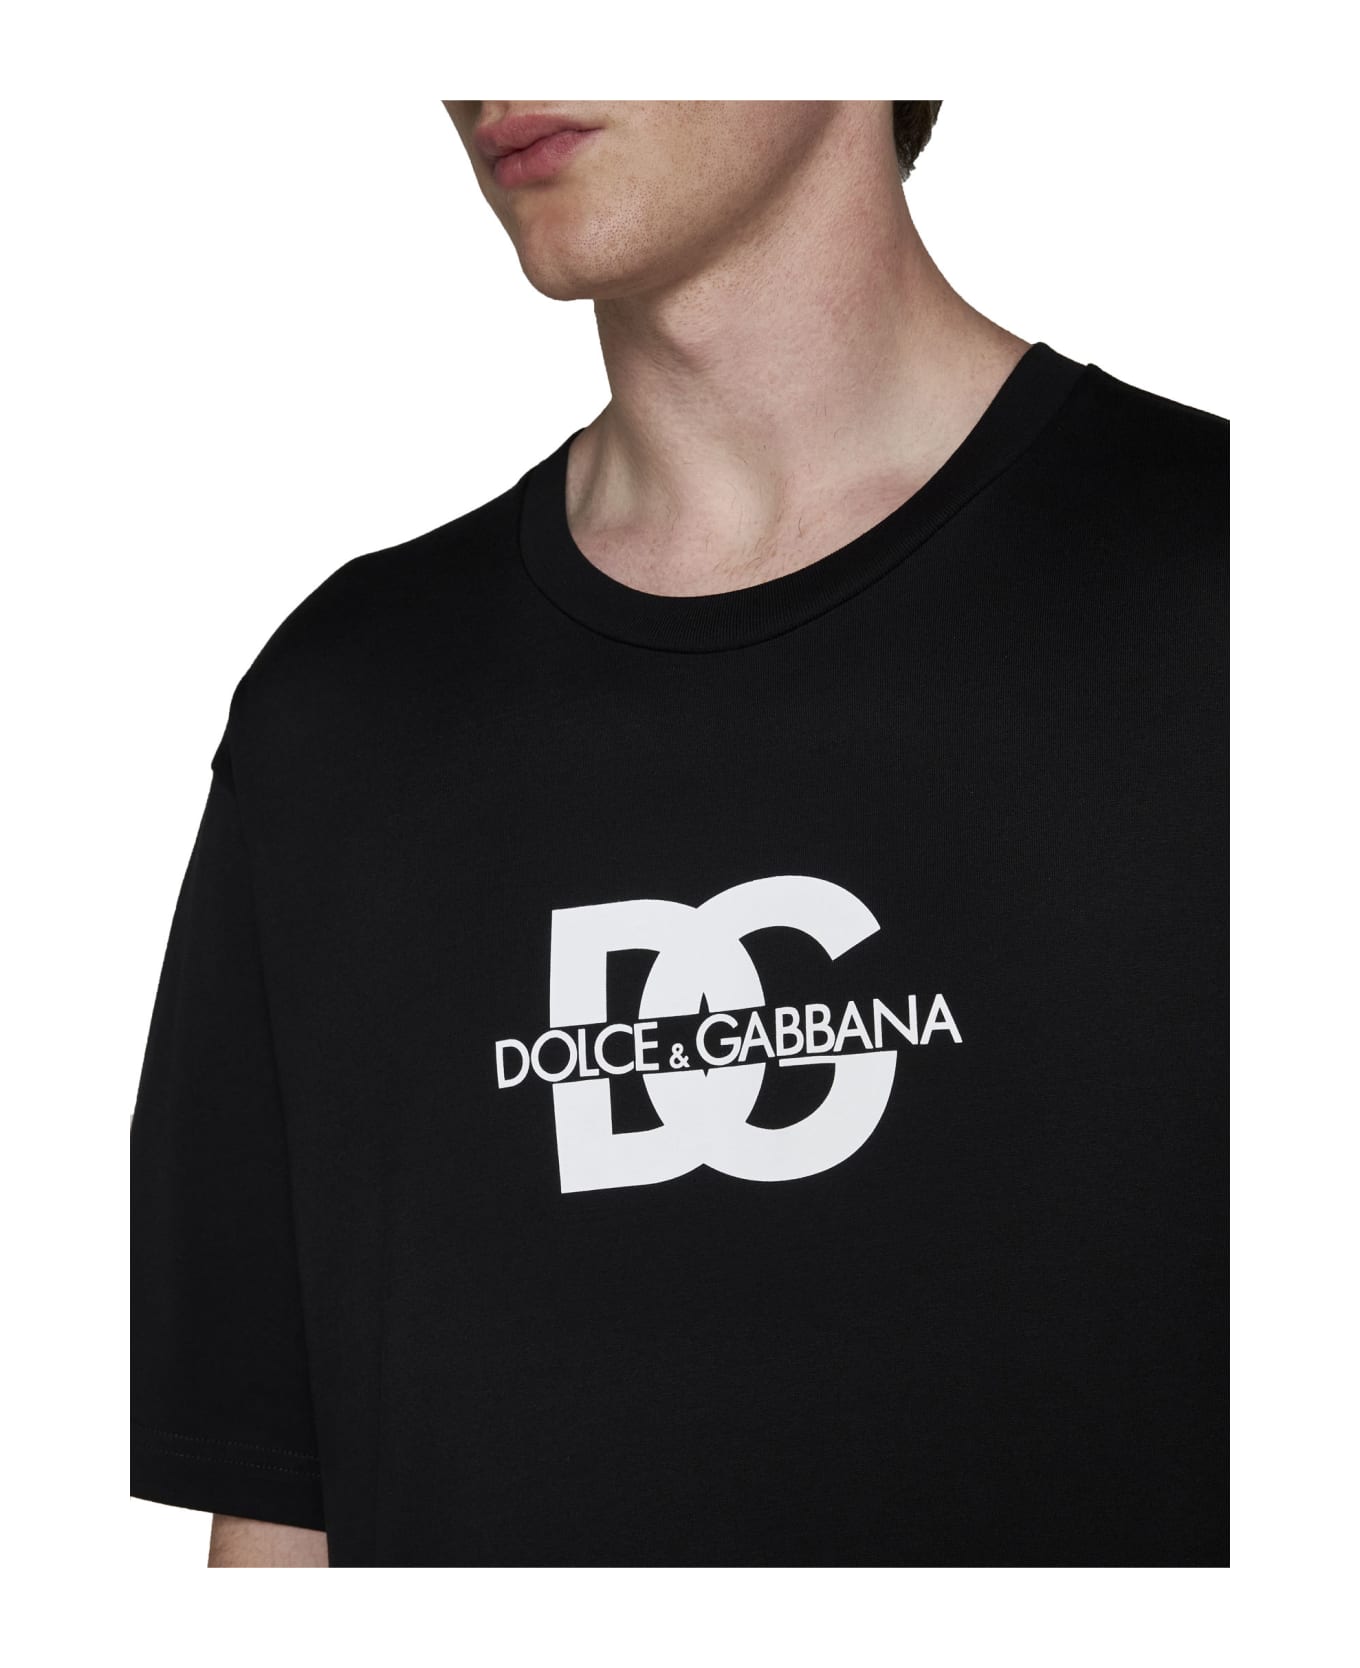 Dolce & Gabbana Logo T-shirt - Black